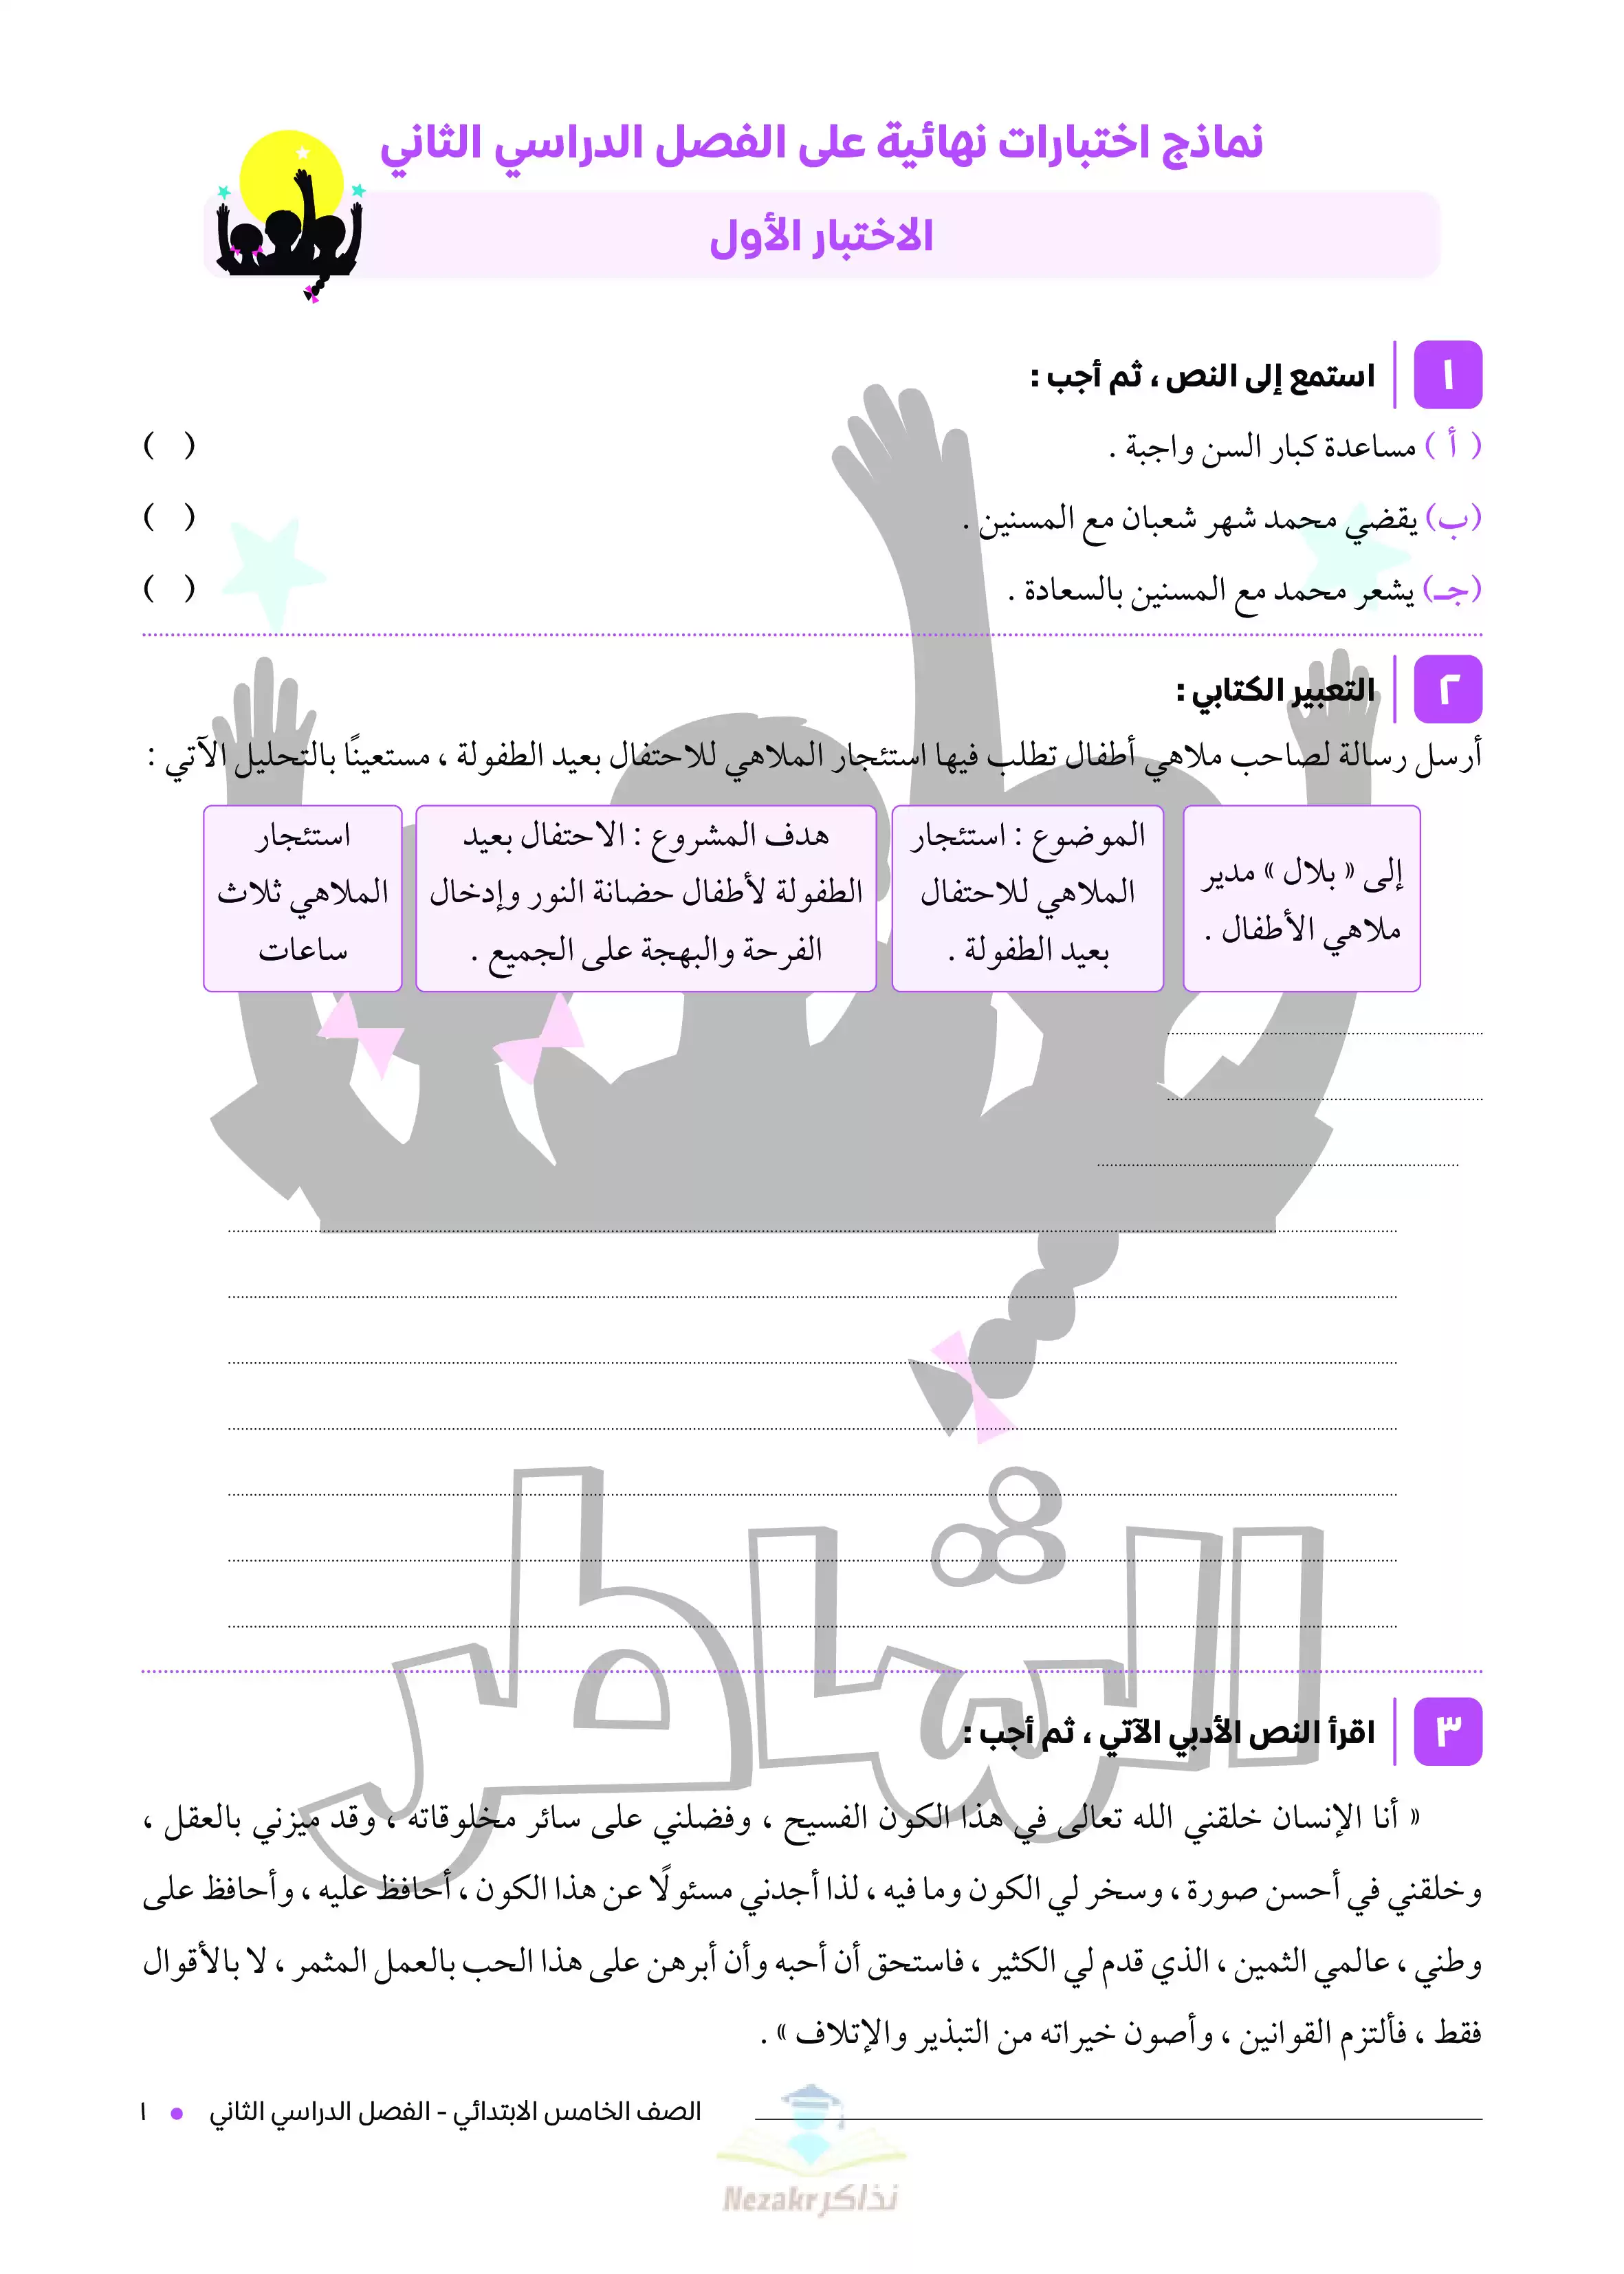 تحميل اختبارات الشاطر في اللغة العربية للصف الخامس الابتدائي ترم ثاني